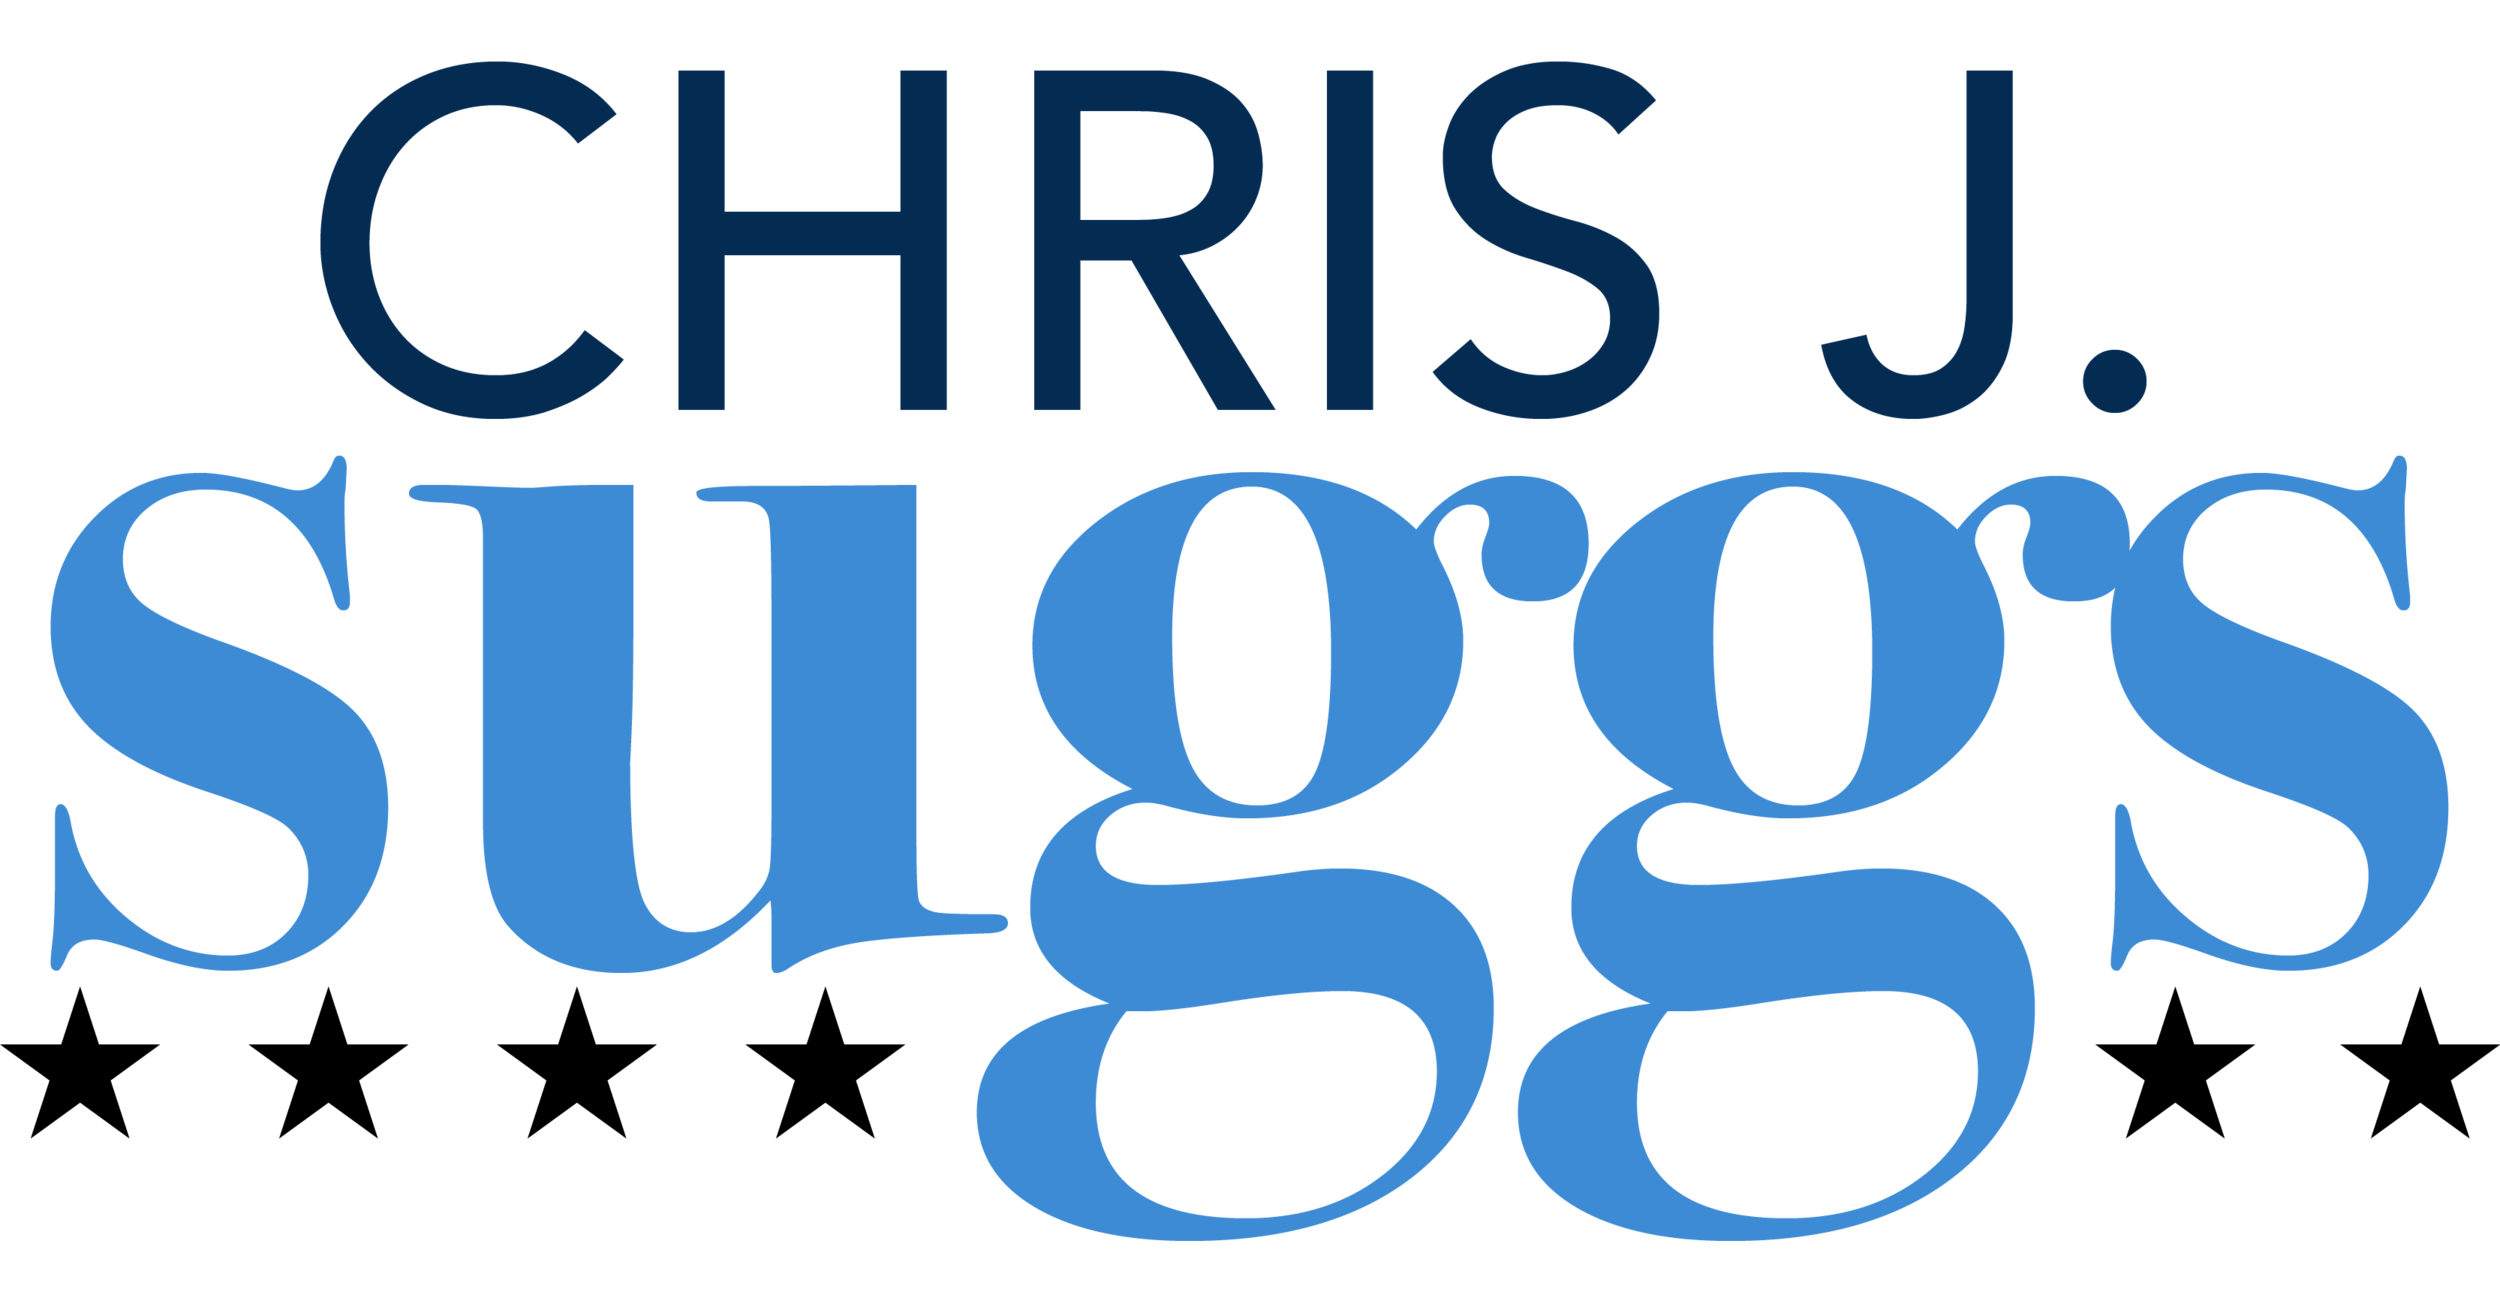 Chris J. Suggs